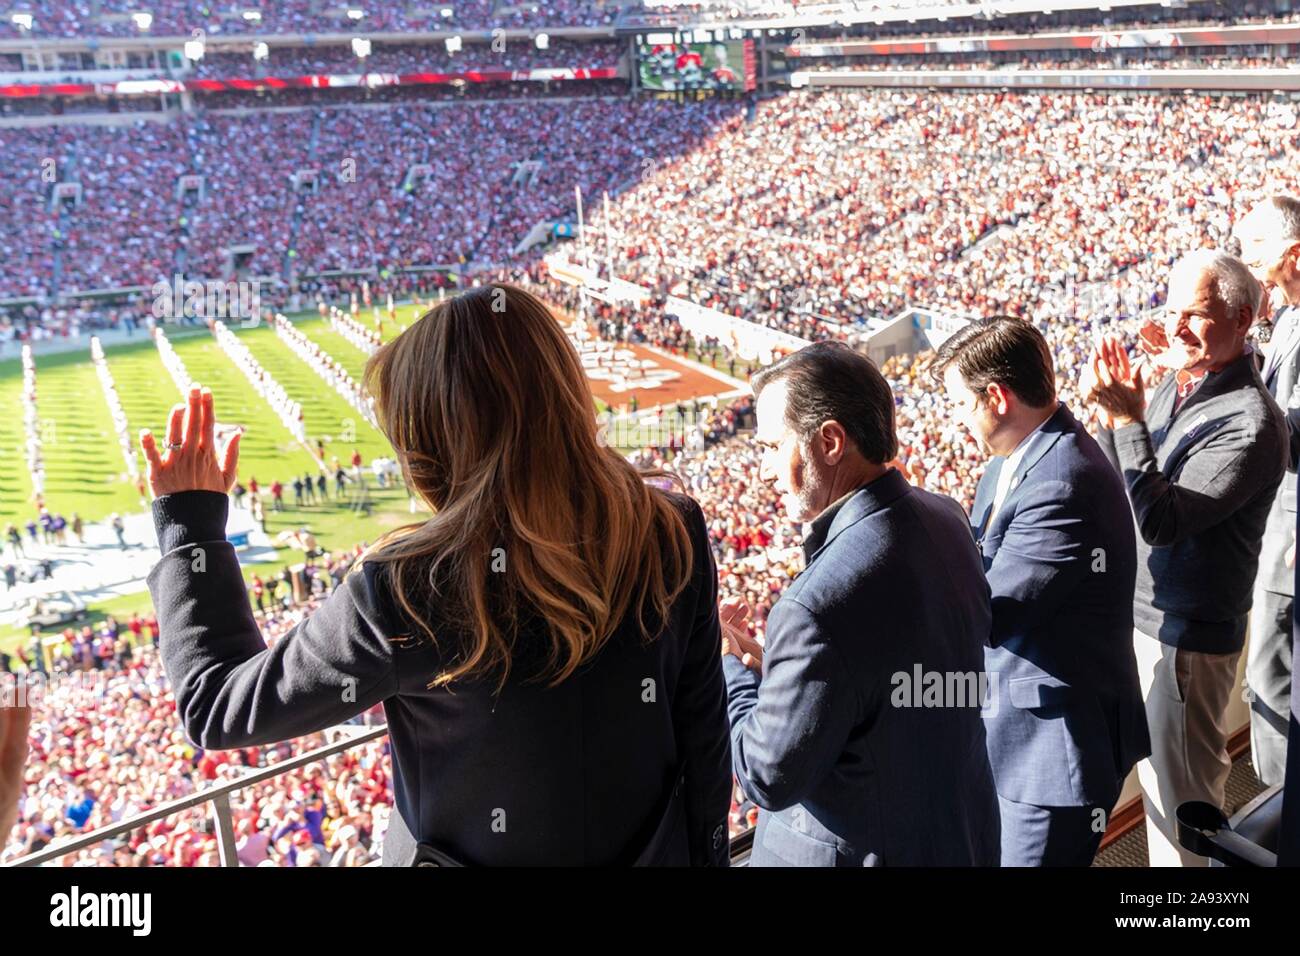 U.S prima signora Melania Trump onde durante la fase iniziale della University of Alabama vs Università dello stato della Louisiana del gioco del calcio presso lo Stadio Bryant-Denny Novembre 9, 2019 in Tuscaloosa, Alabama. Foto Stock